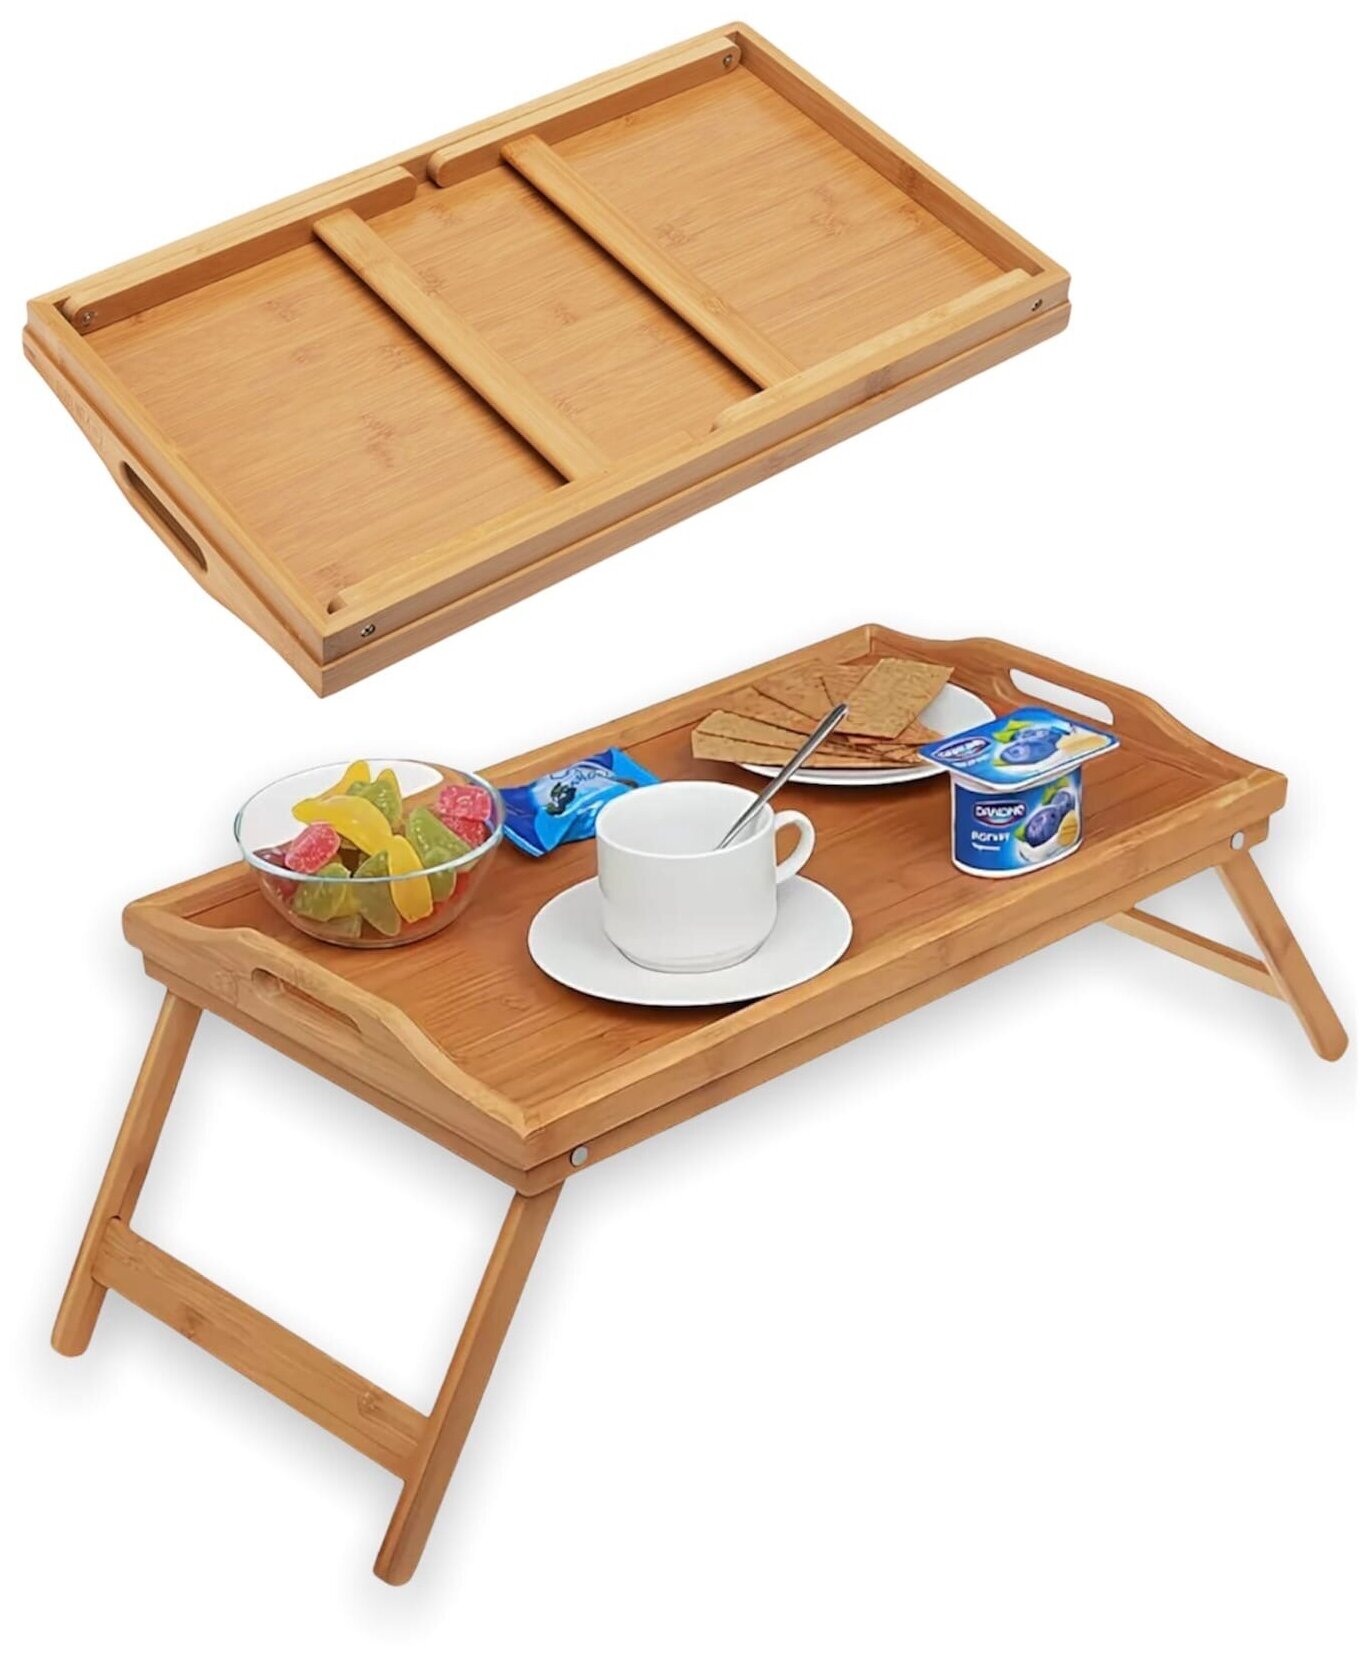 Складной стол / Поднос для кровати /  для завтрака в постель .